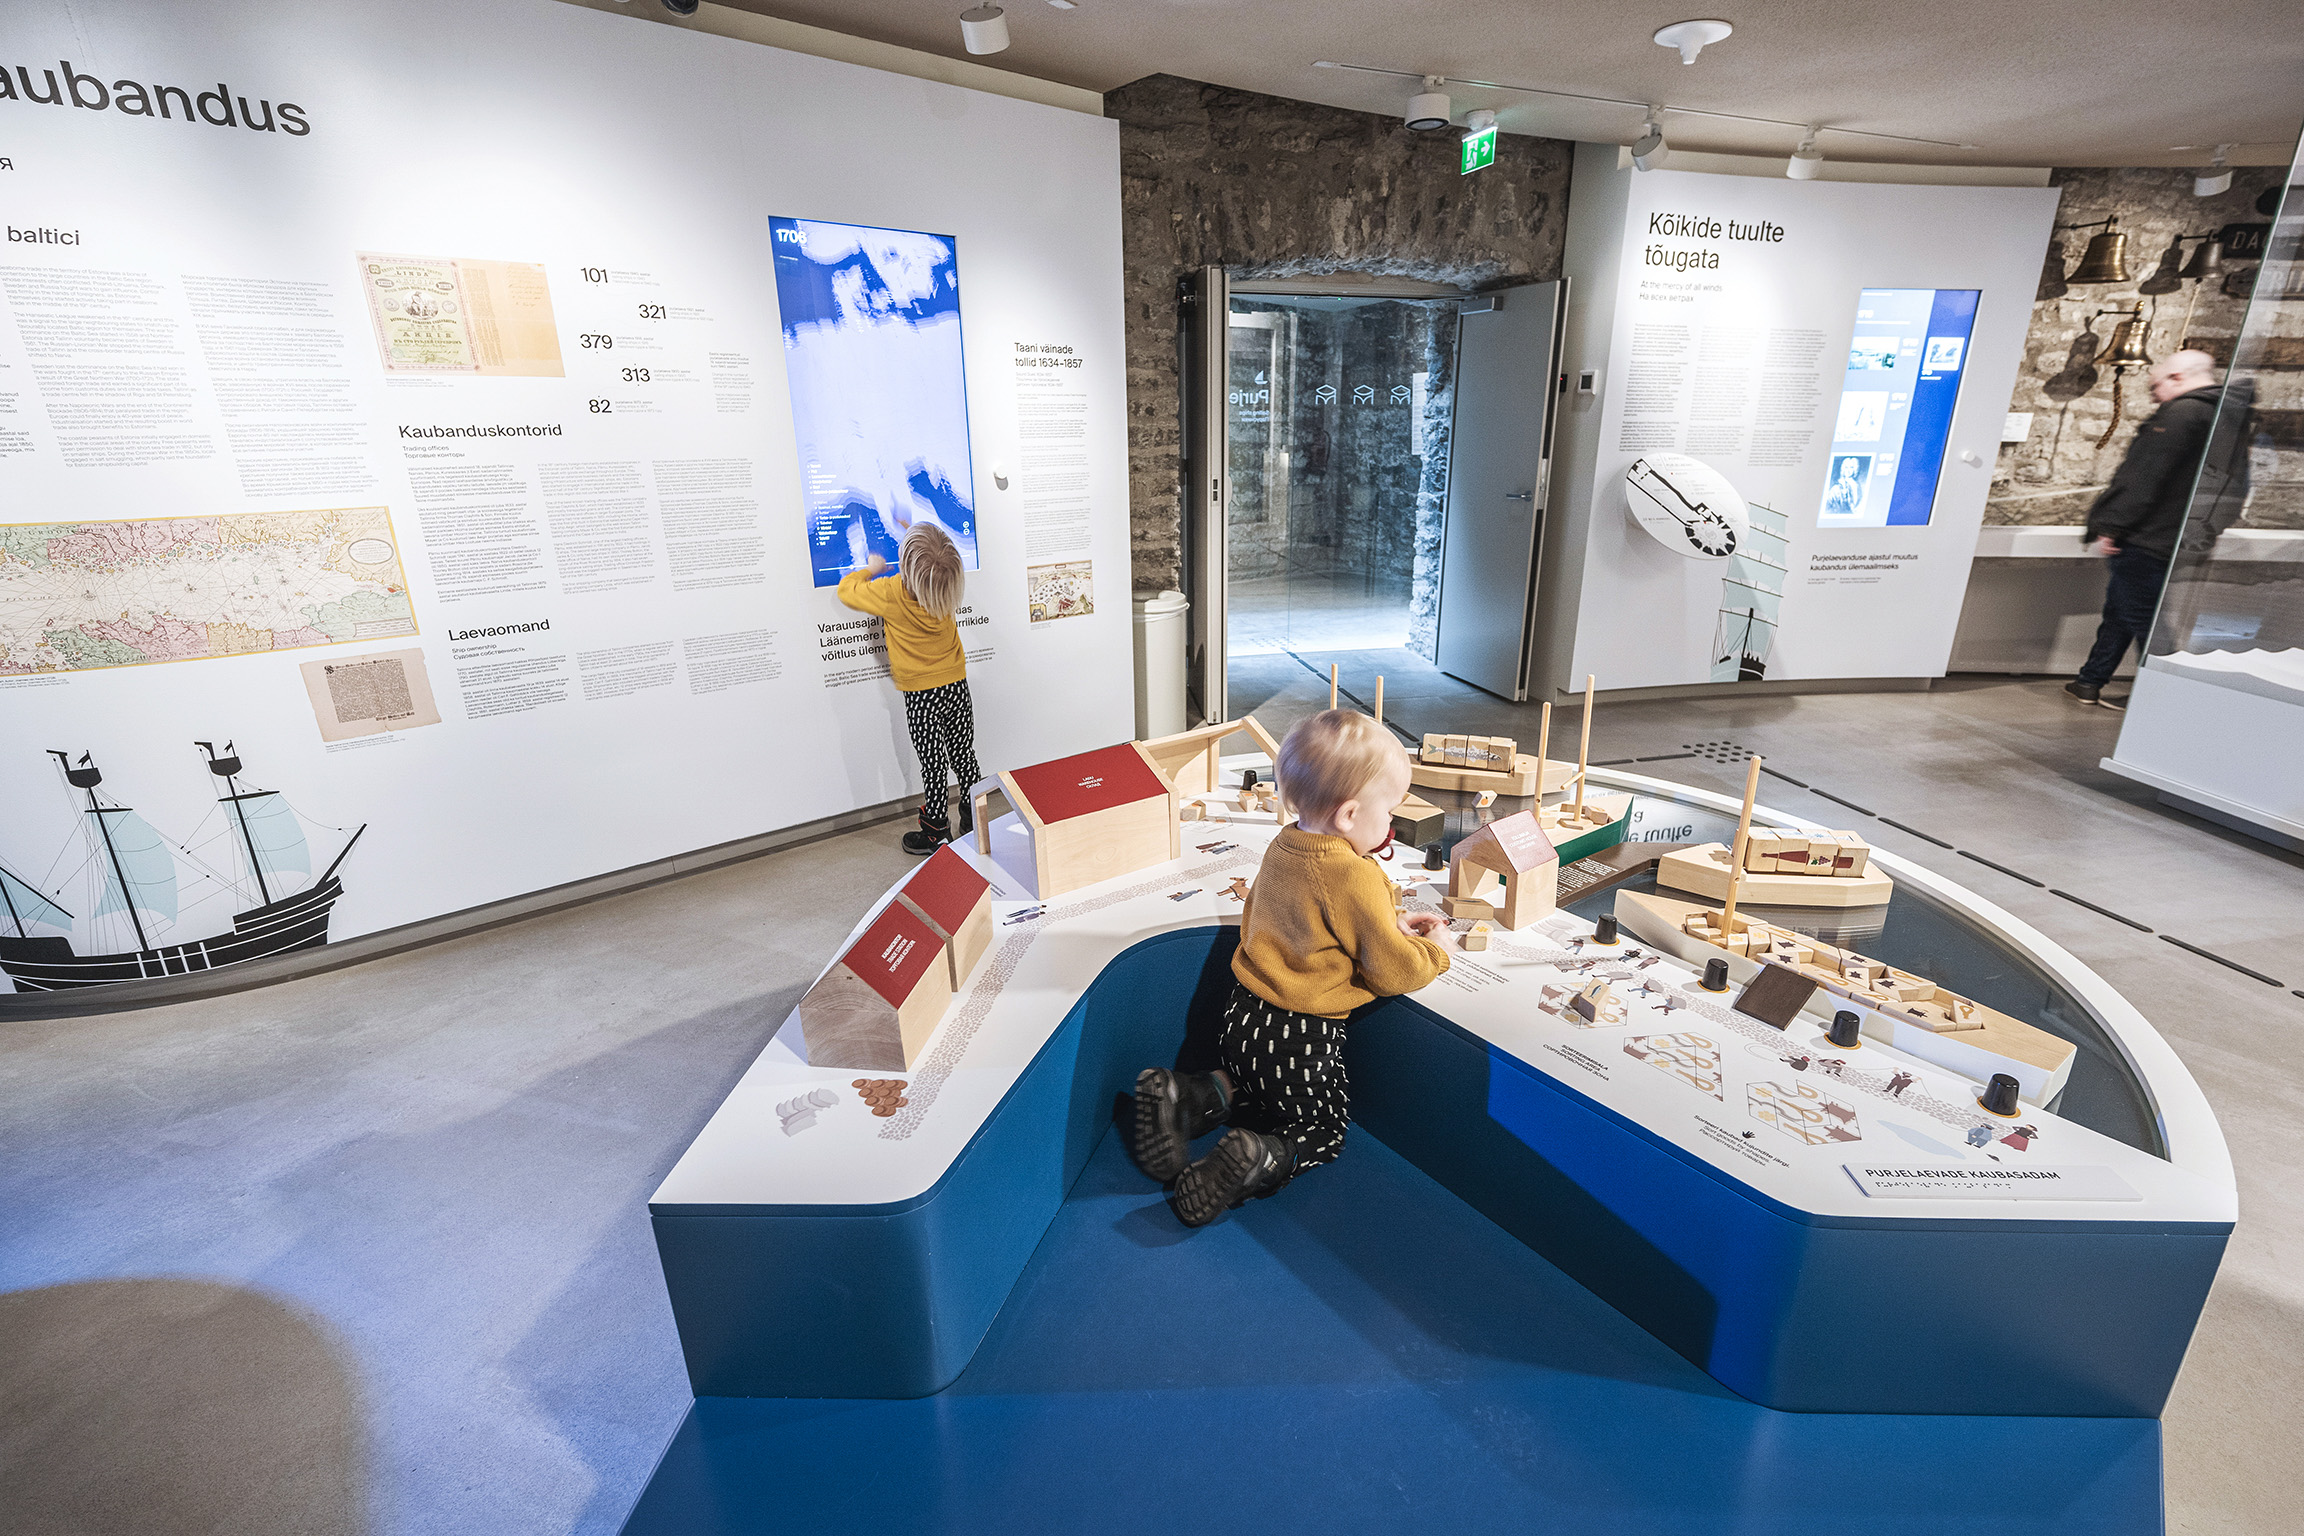 diseno-espacios-interiores-estonia-maritime-museum-04